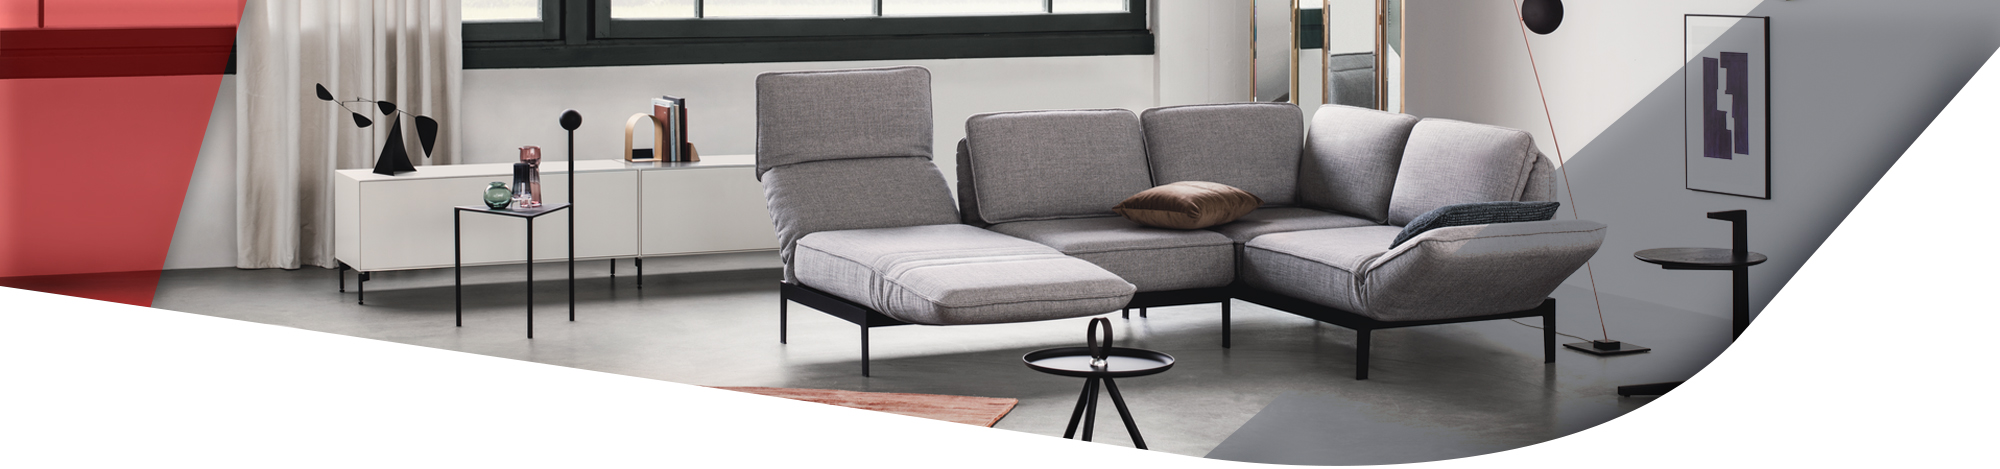 graue Couch mit verstellbaren Arm und Rückenlehnen im Wohnzimmer mit weißem Lowboard im Hintergrund